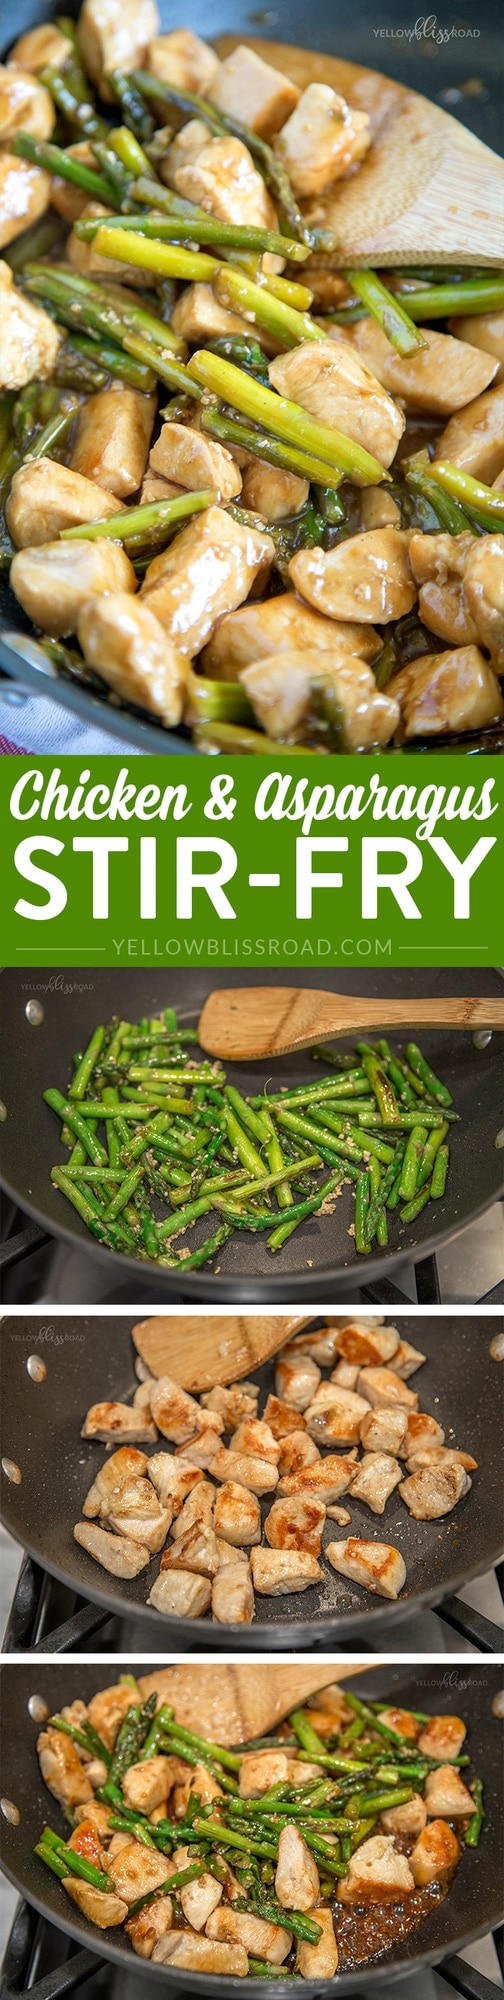 Chicken & Asparagus Stir-Fry